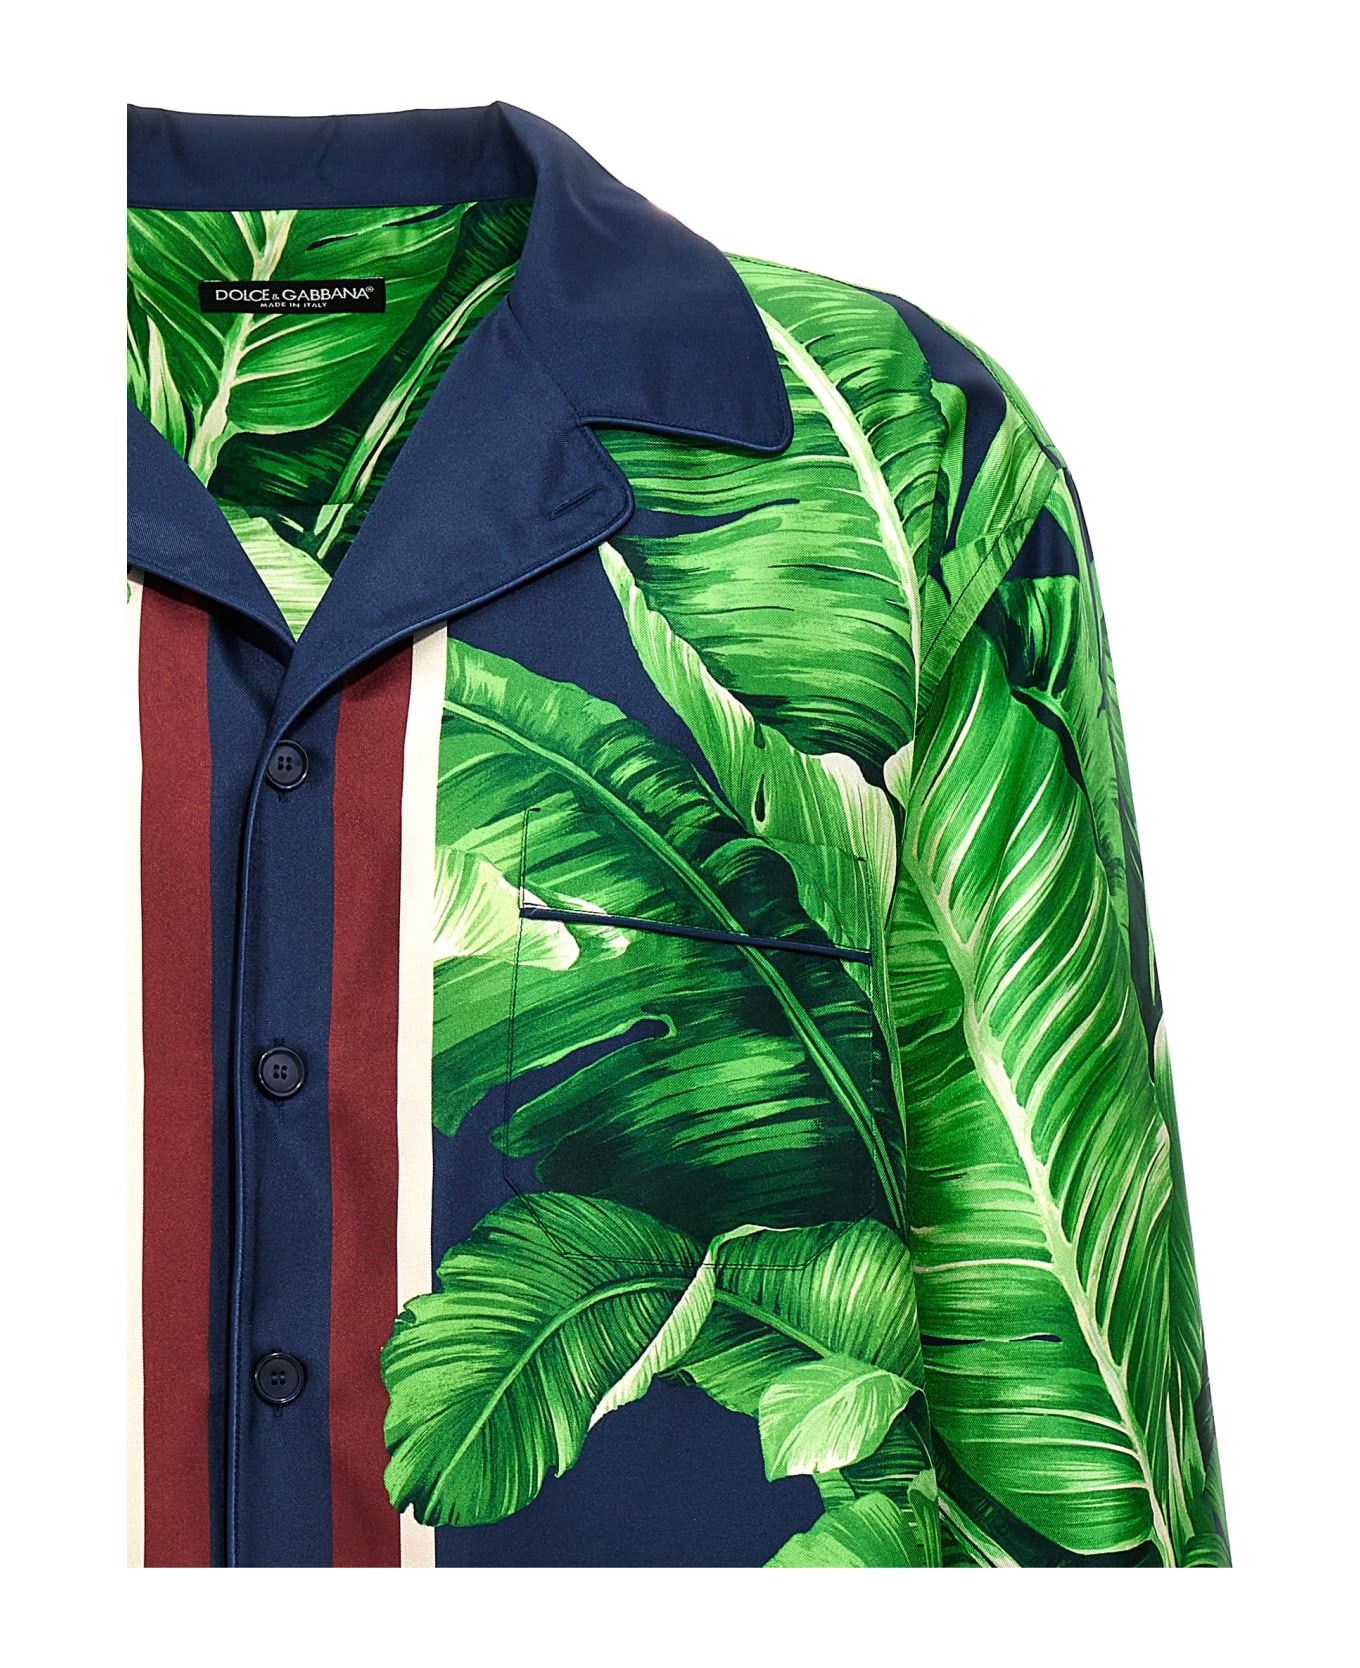 Dolce & Gabbana 'banano' Shirt - Green